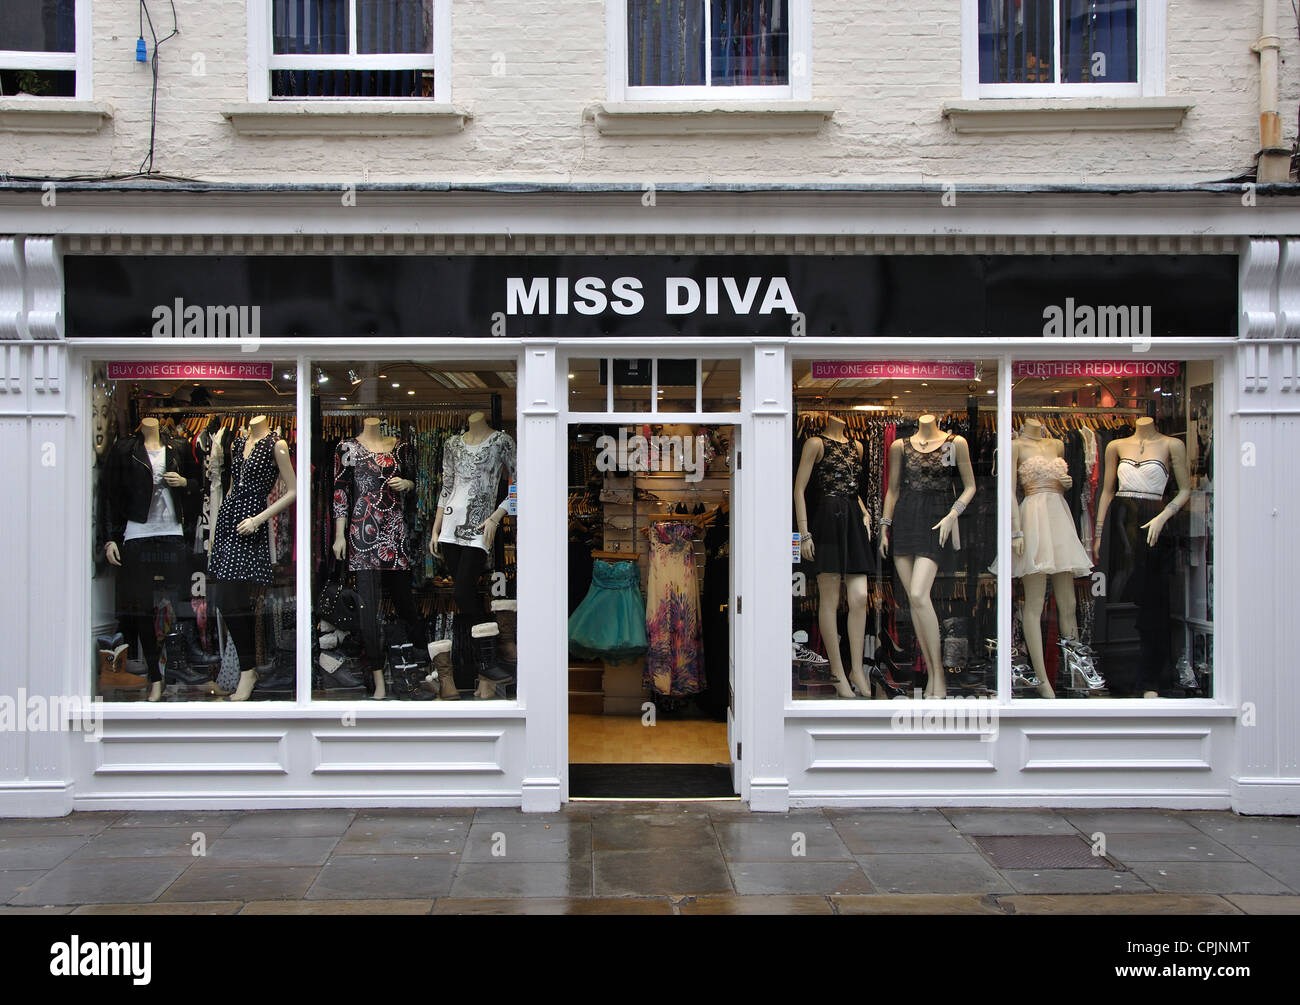 Diva fashion England, UK Stock Photo - Alamy